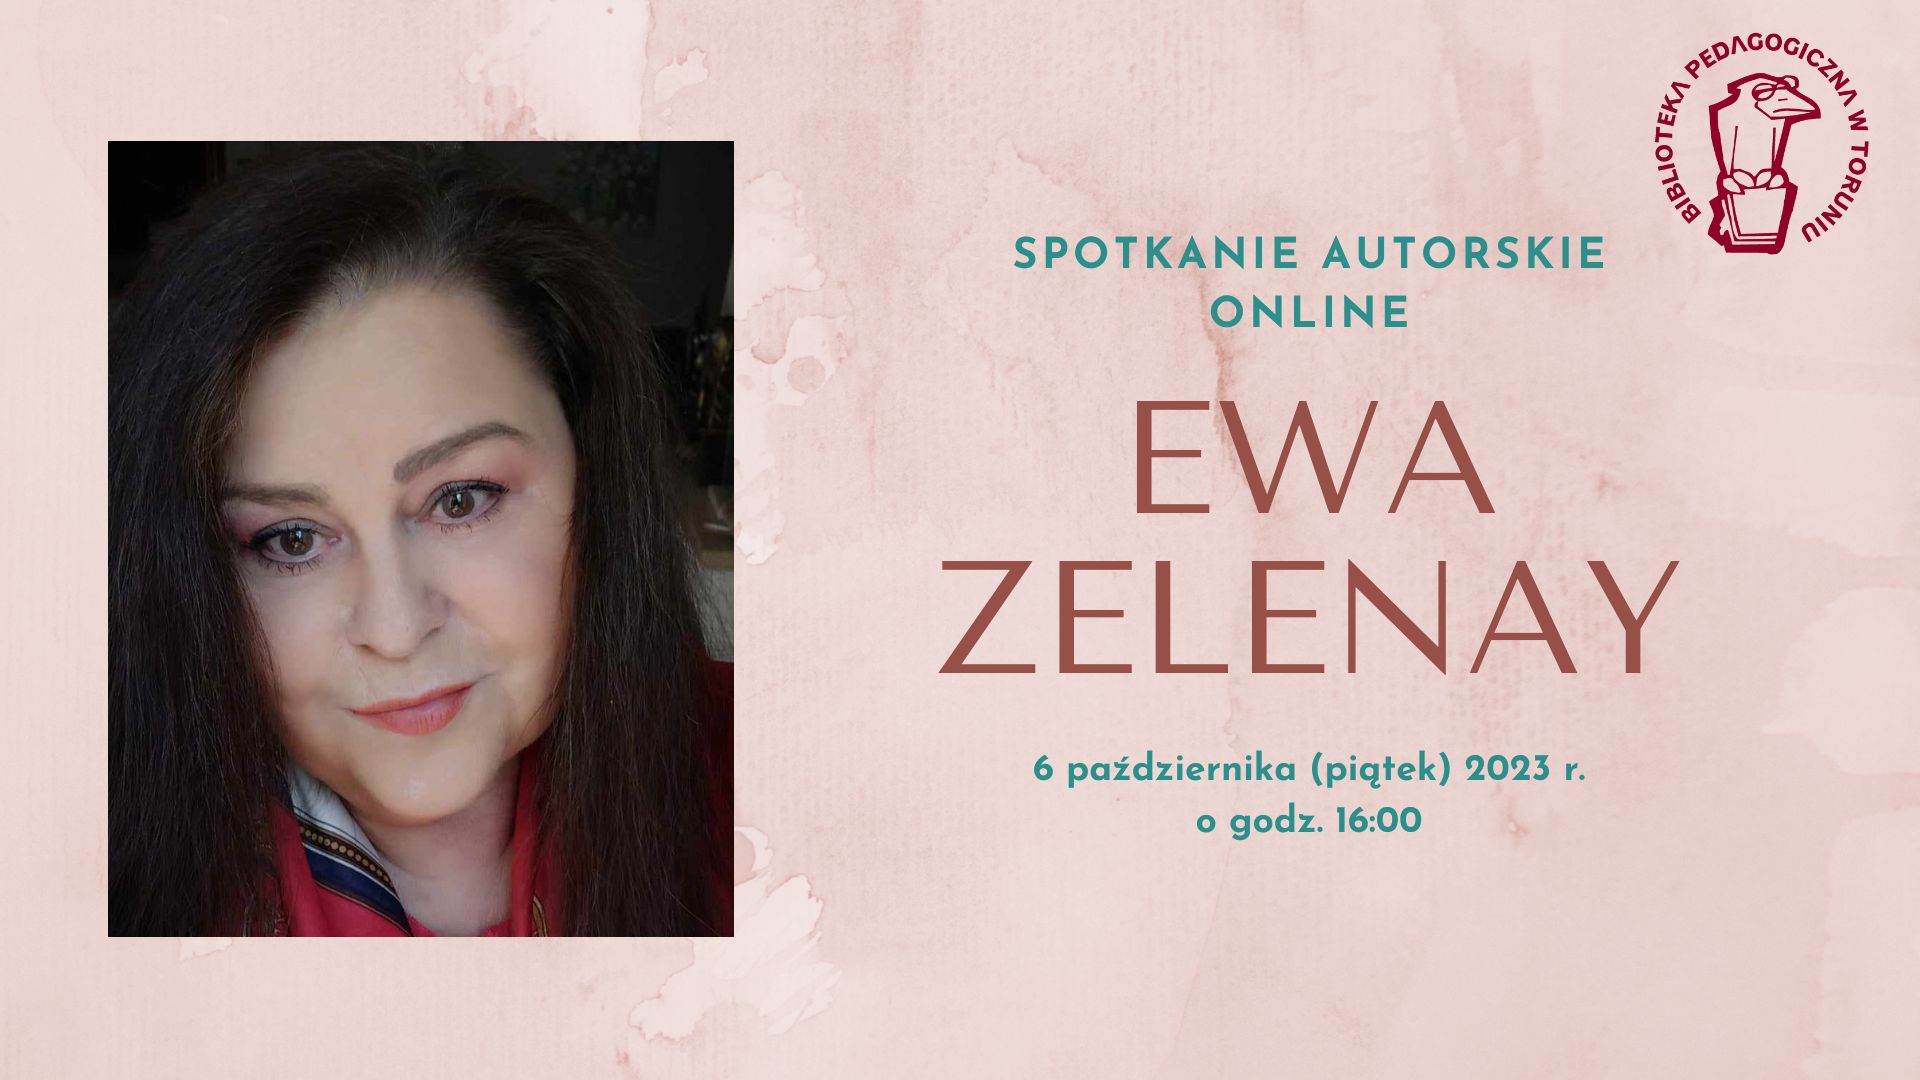 Zaproszenie na spotkanie autorskie online z poetką - Ewą Zelenay, które odbędzie się 6 października 2023 r. o godzinie 16:00. Po lewej stronie zdjęcie portretowe kobiety z długimi, ciemnymi włosami.